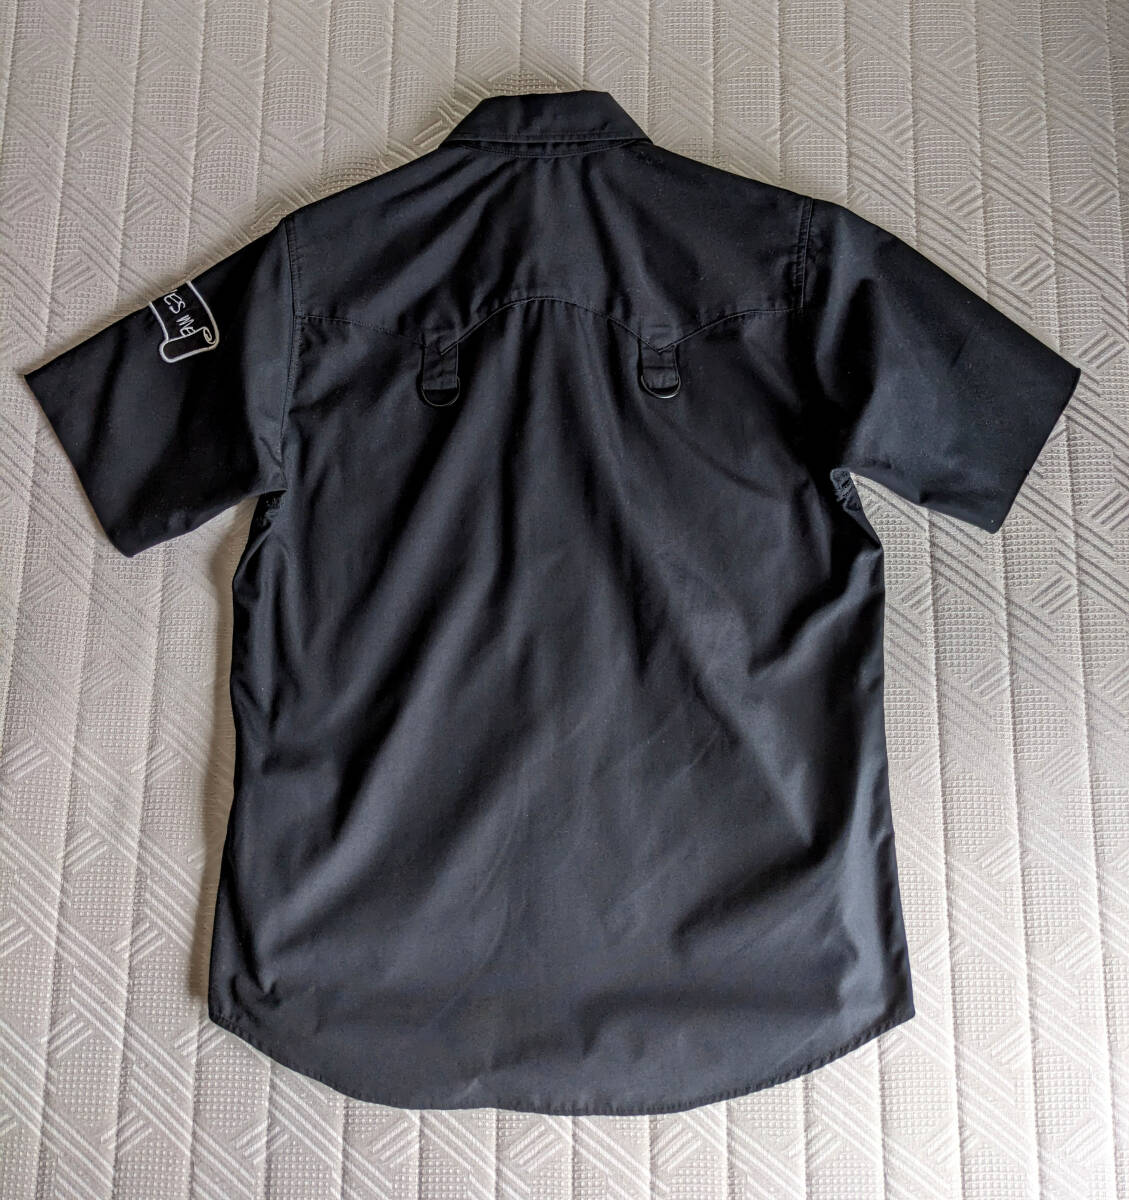  прекрасный товар Pledge pledge рубашка с коротким рукавом черный чёрный 46 поиск ) Denim жакет футболка cut and sewn 